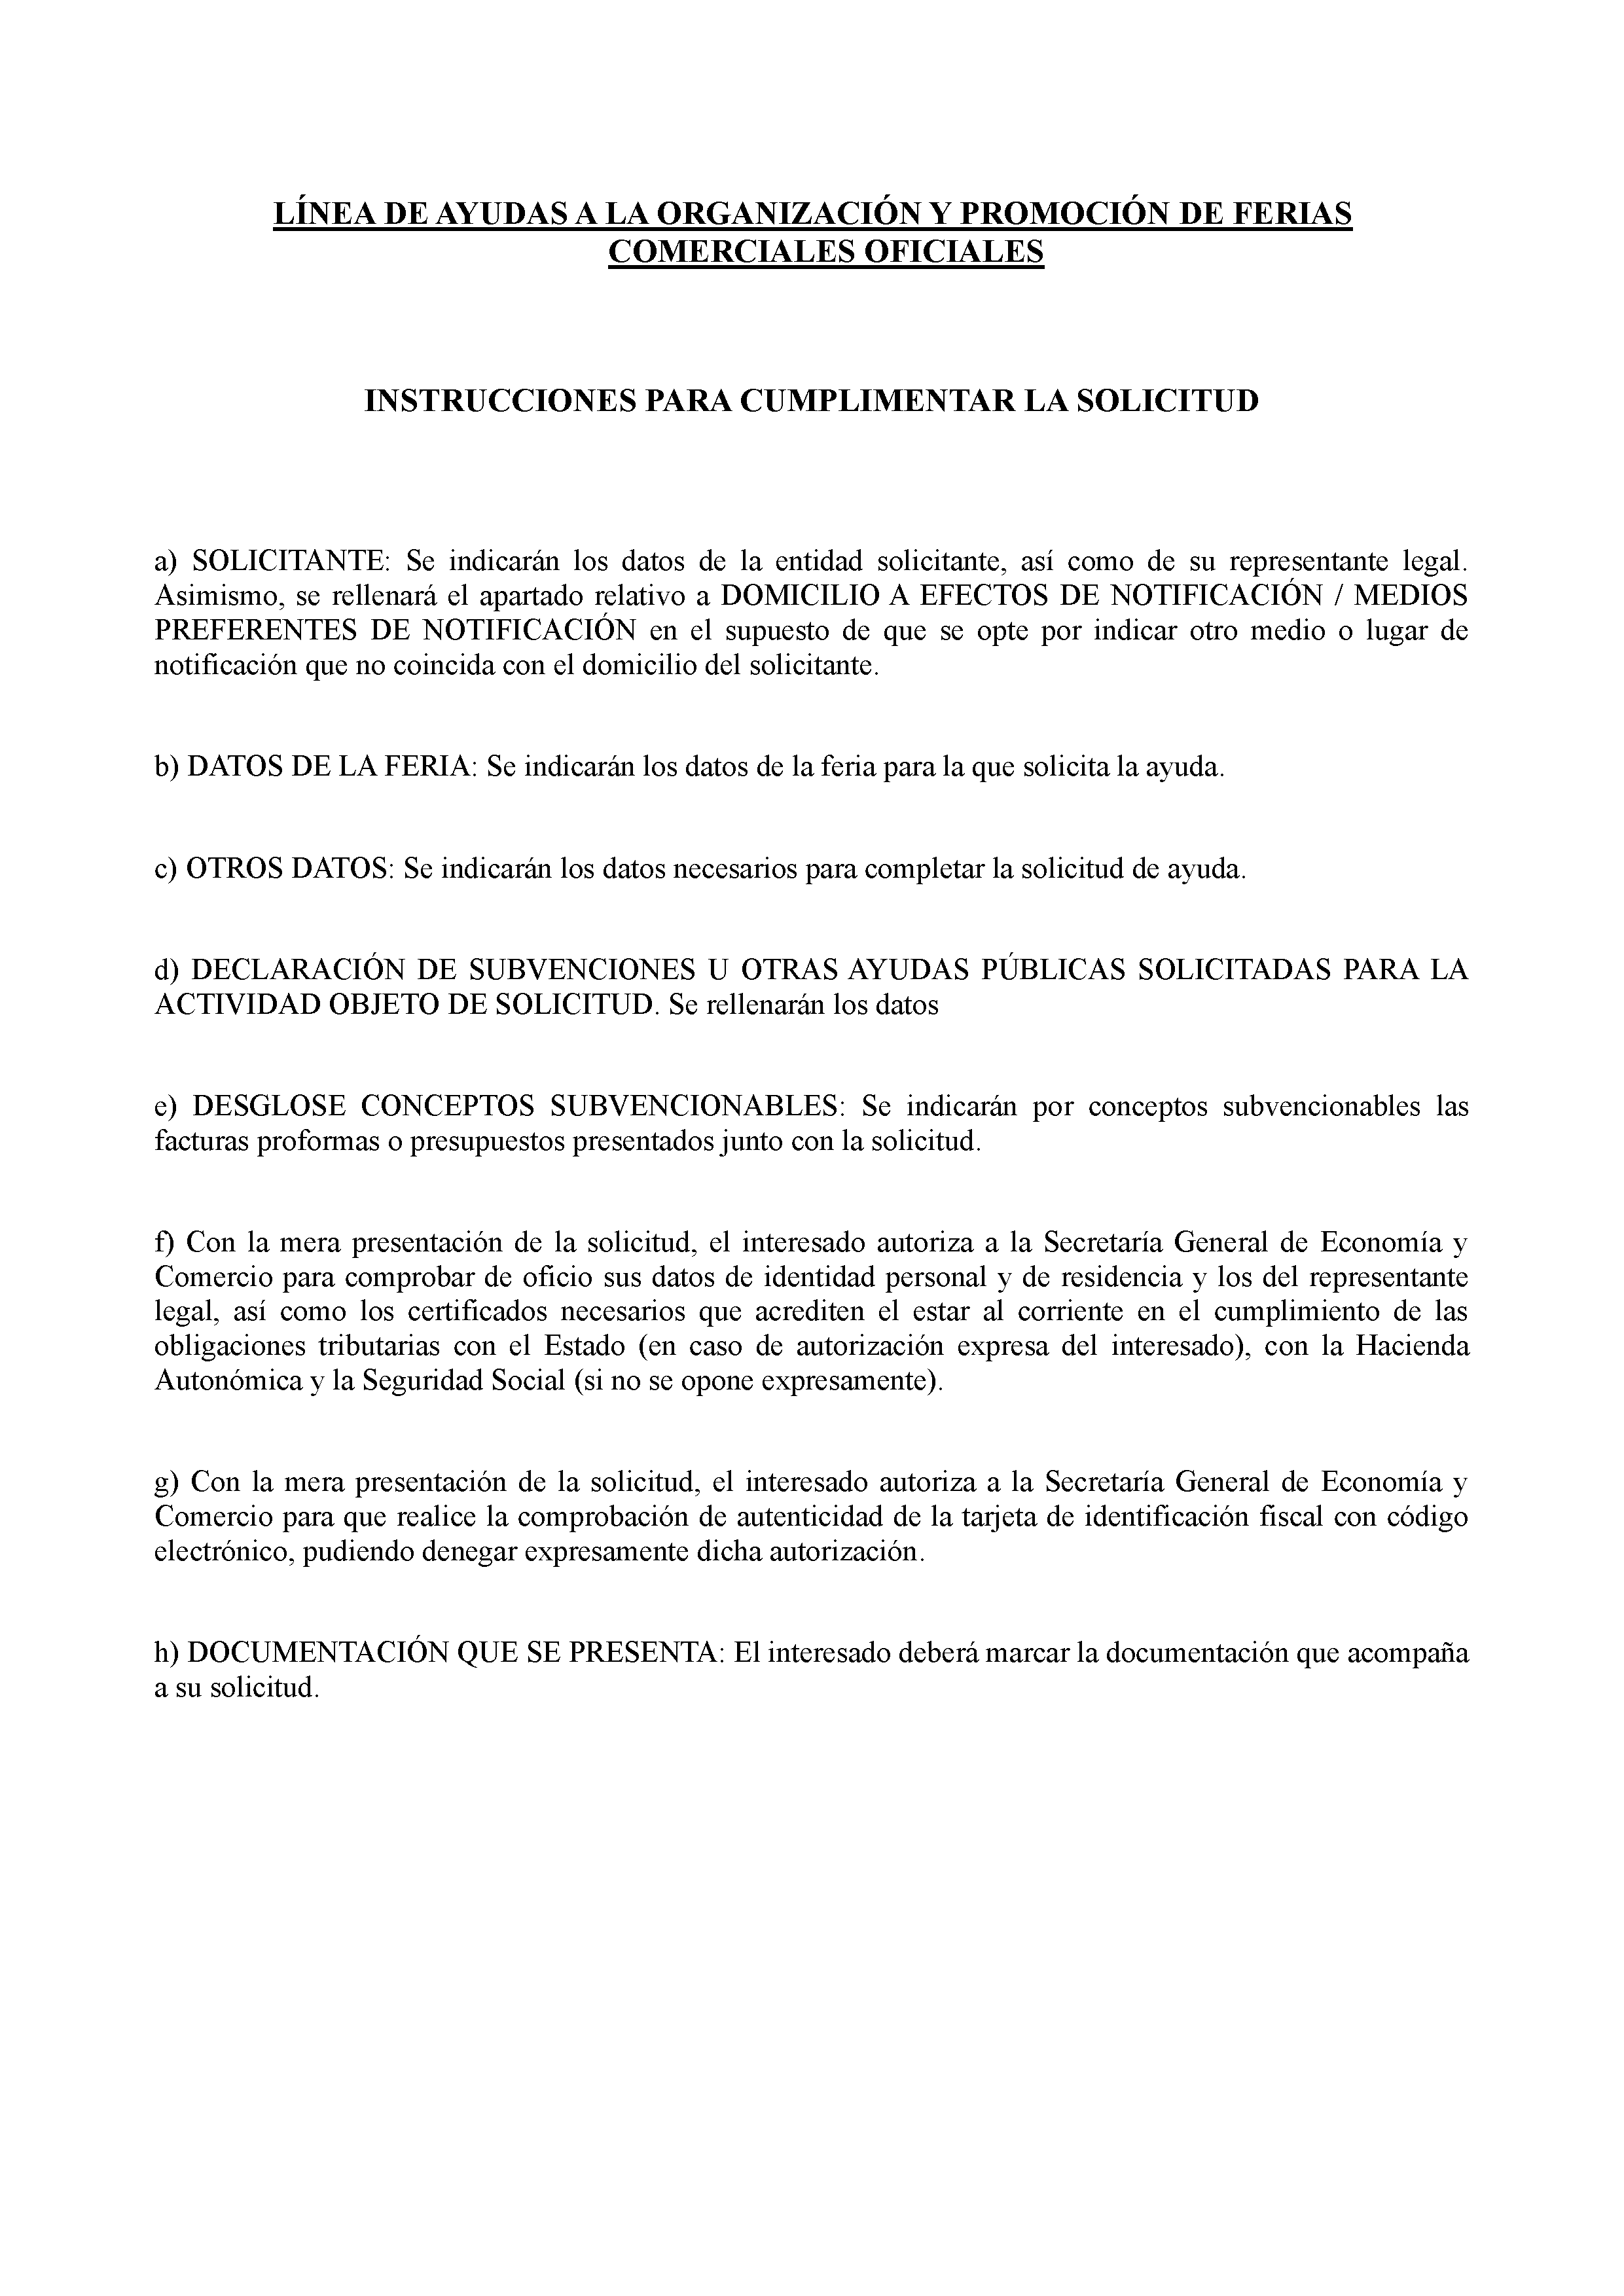 ANEXO I LINEA DE AYUDAS A LA ORGANIZACION Y PROMOCION DE FERIAS COMERCIALES OFICIALES Pag 10